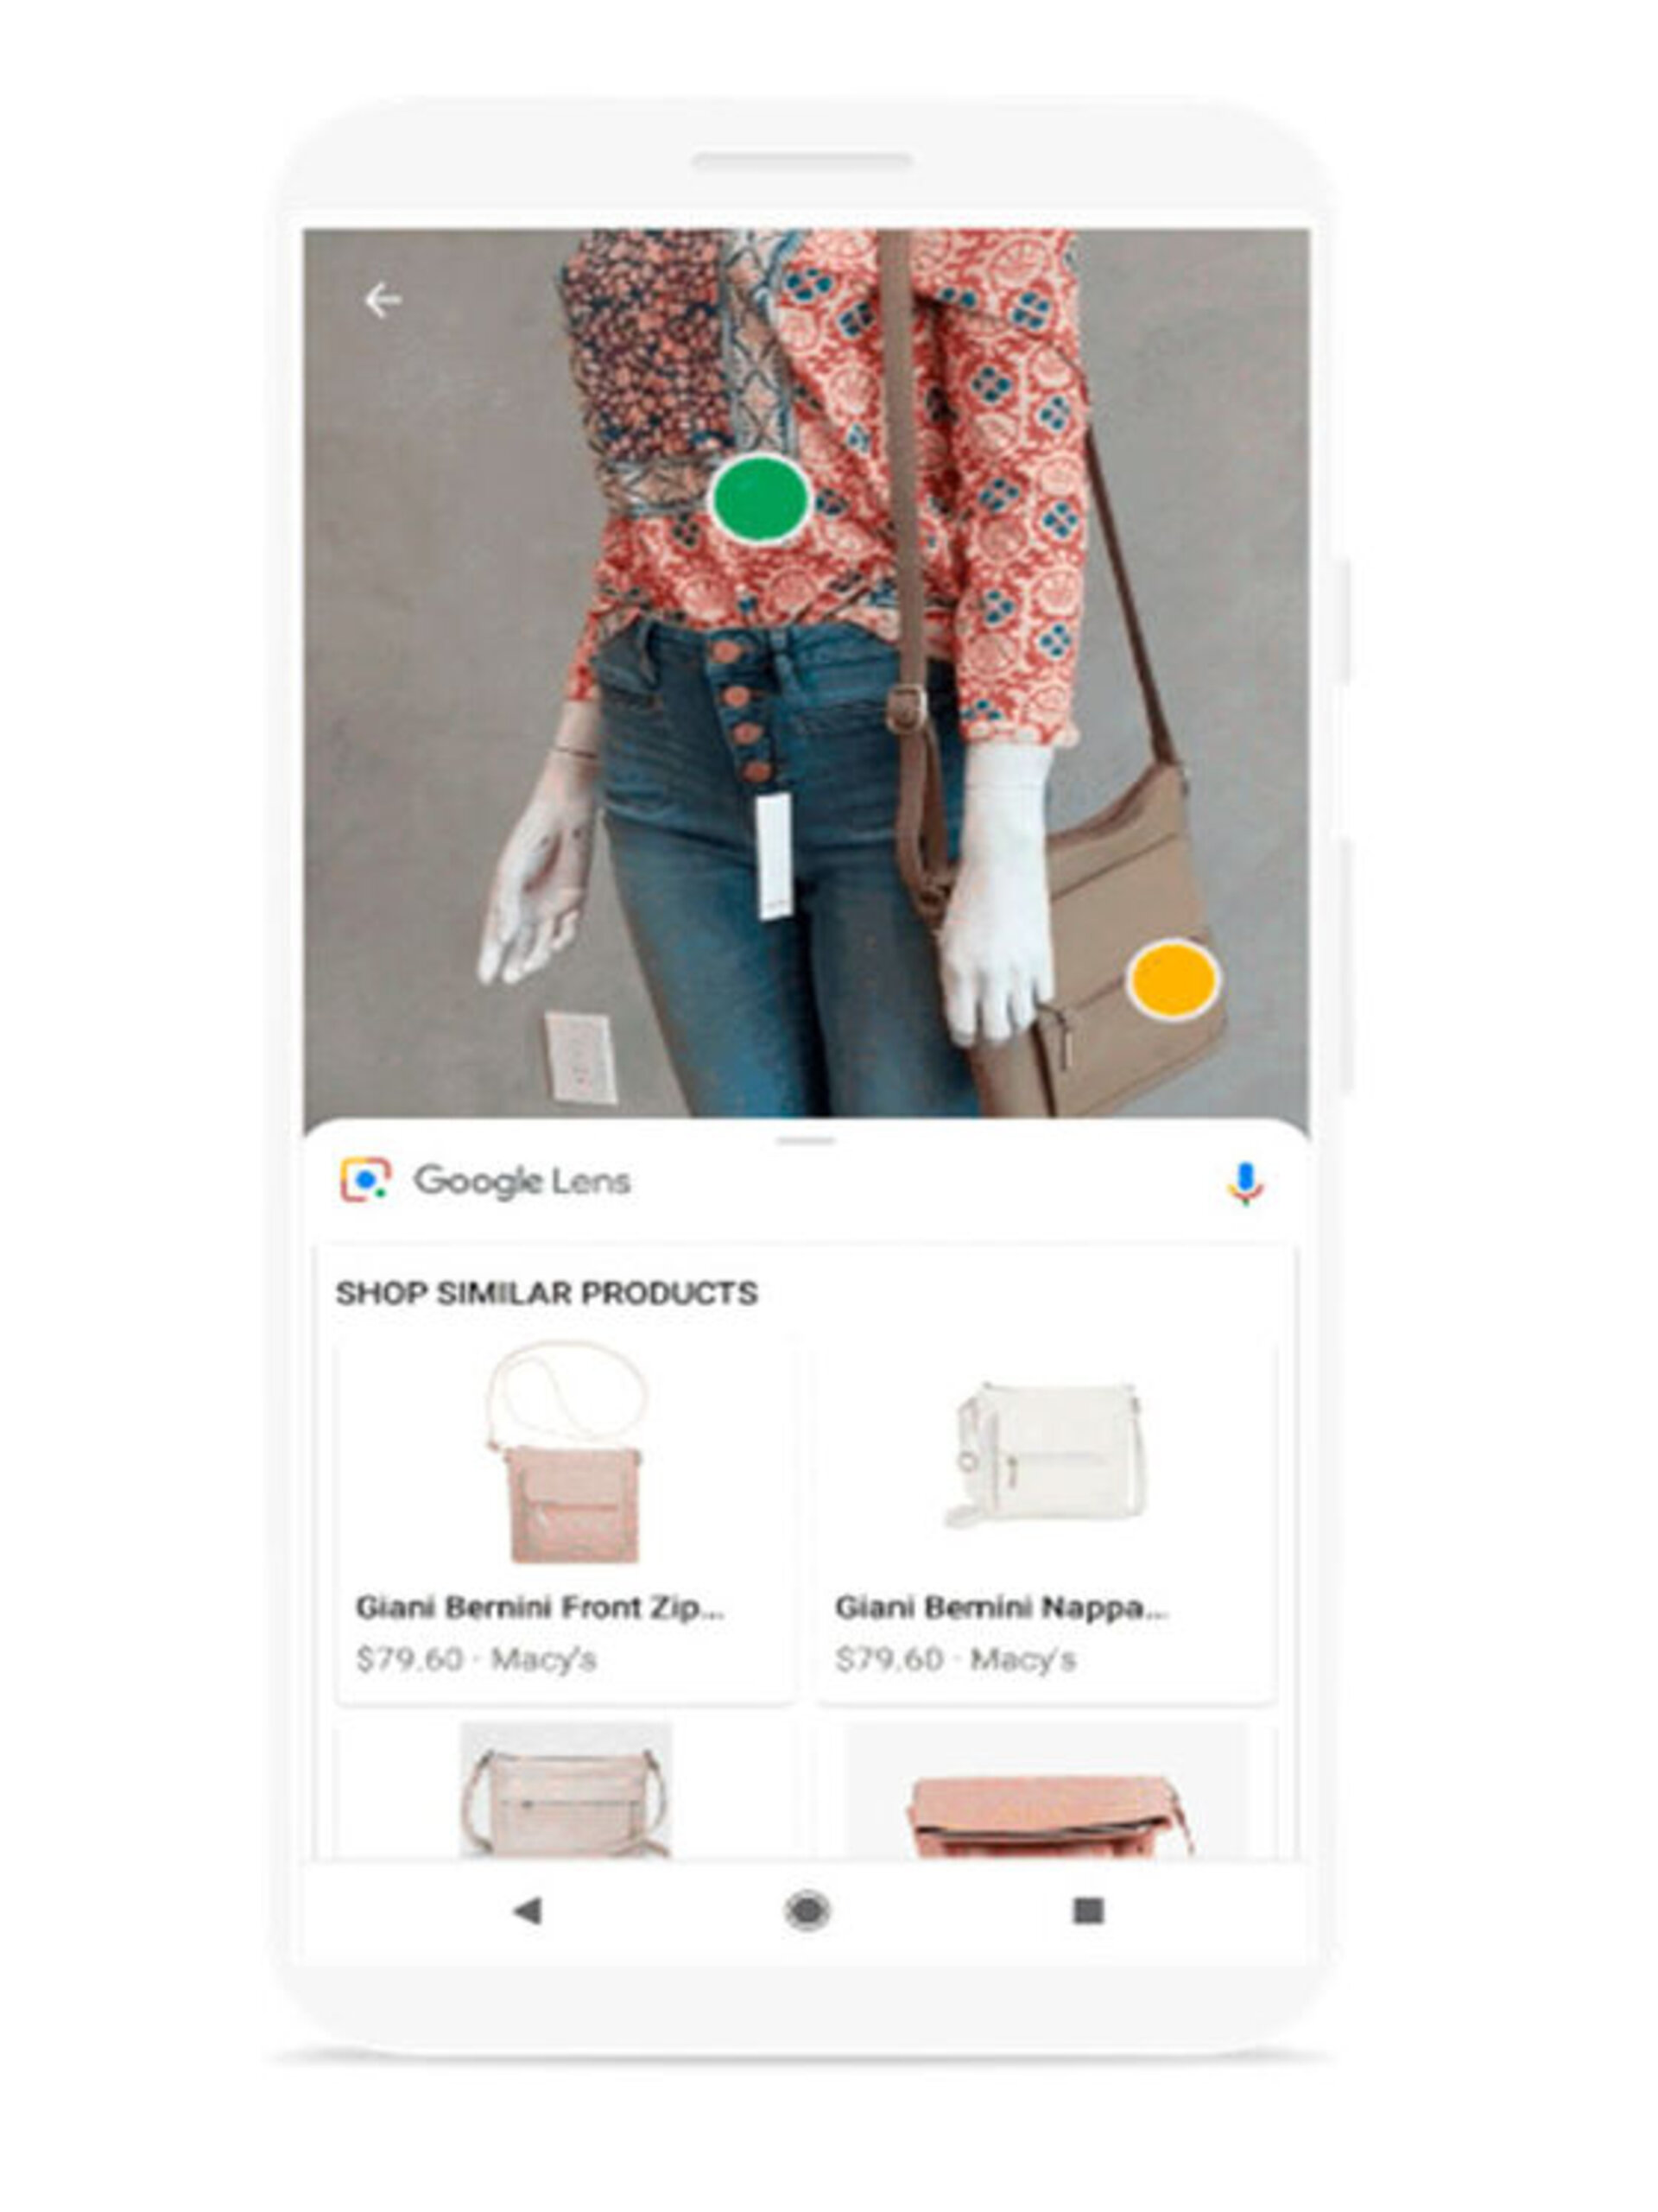 Med Google Lens er det muligt, forudsat at man er Android smartphone-bruger, at søge på Googles egen søgemaskine ved hjælp af billedgenkendelse